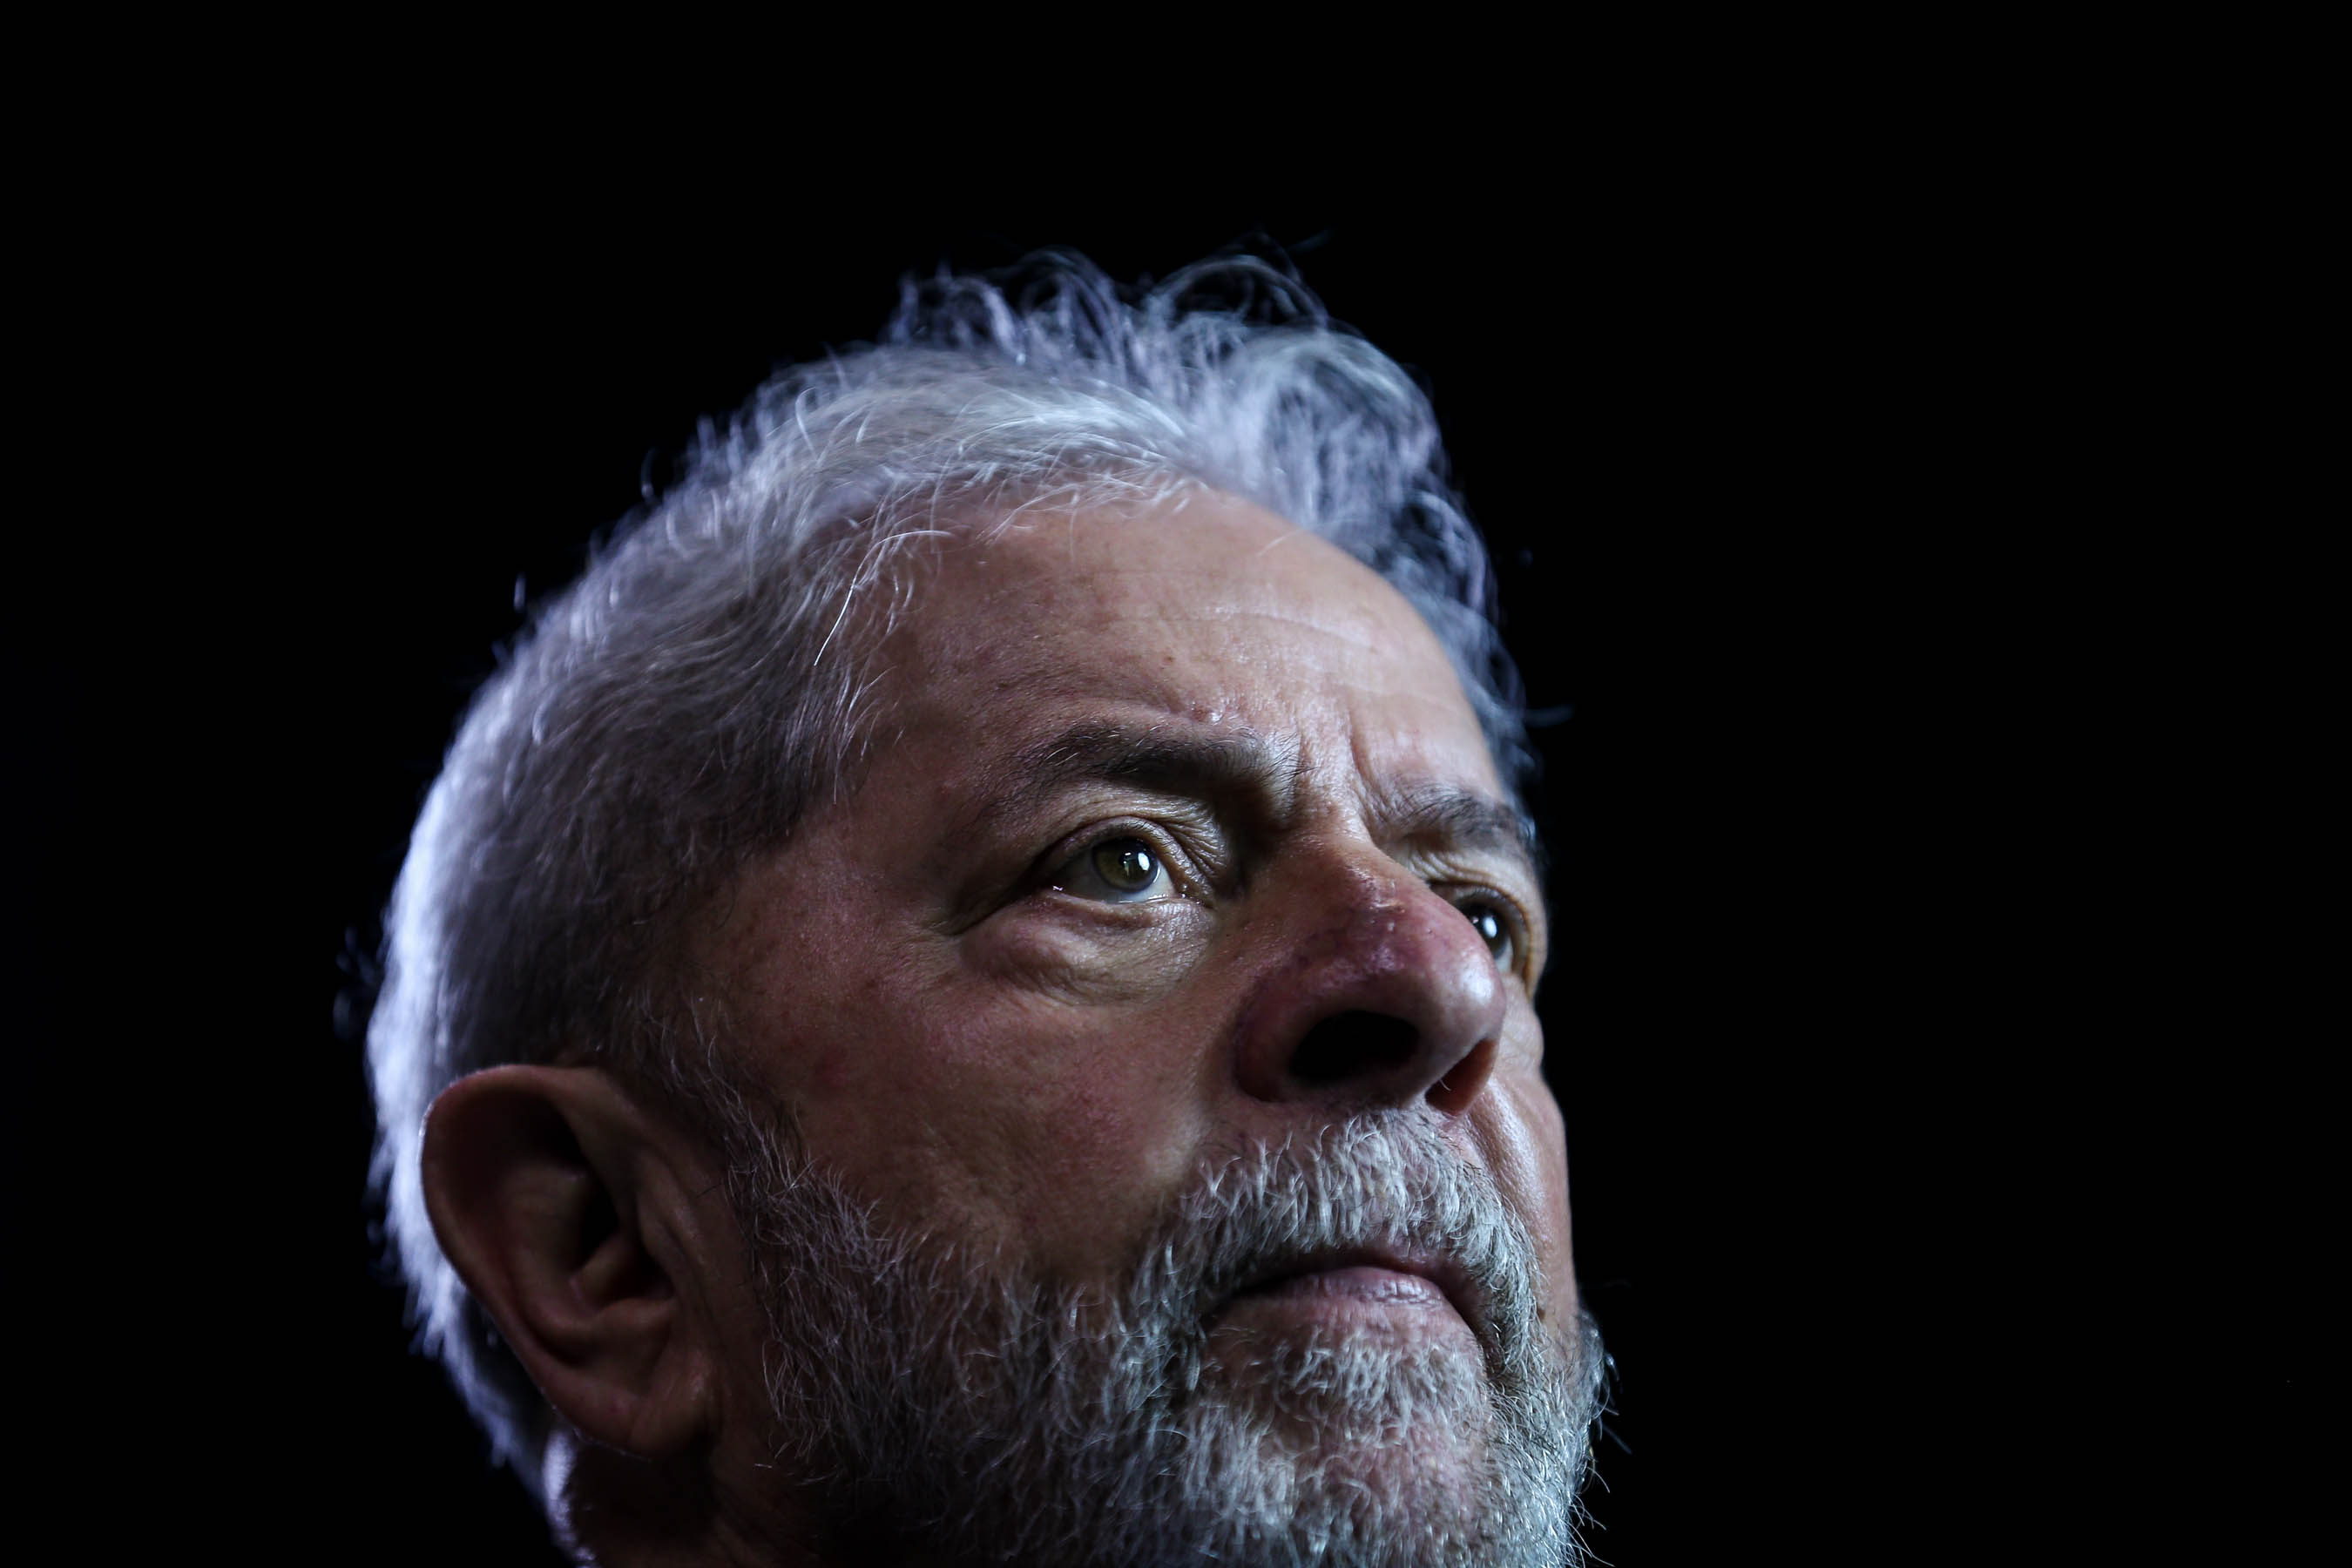 Corte electoral de Brasil juzga validez de la candidatura de Lula